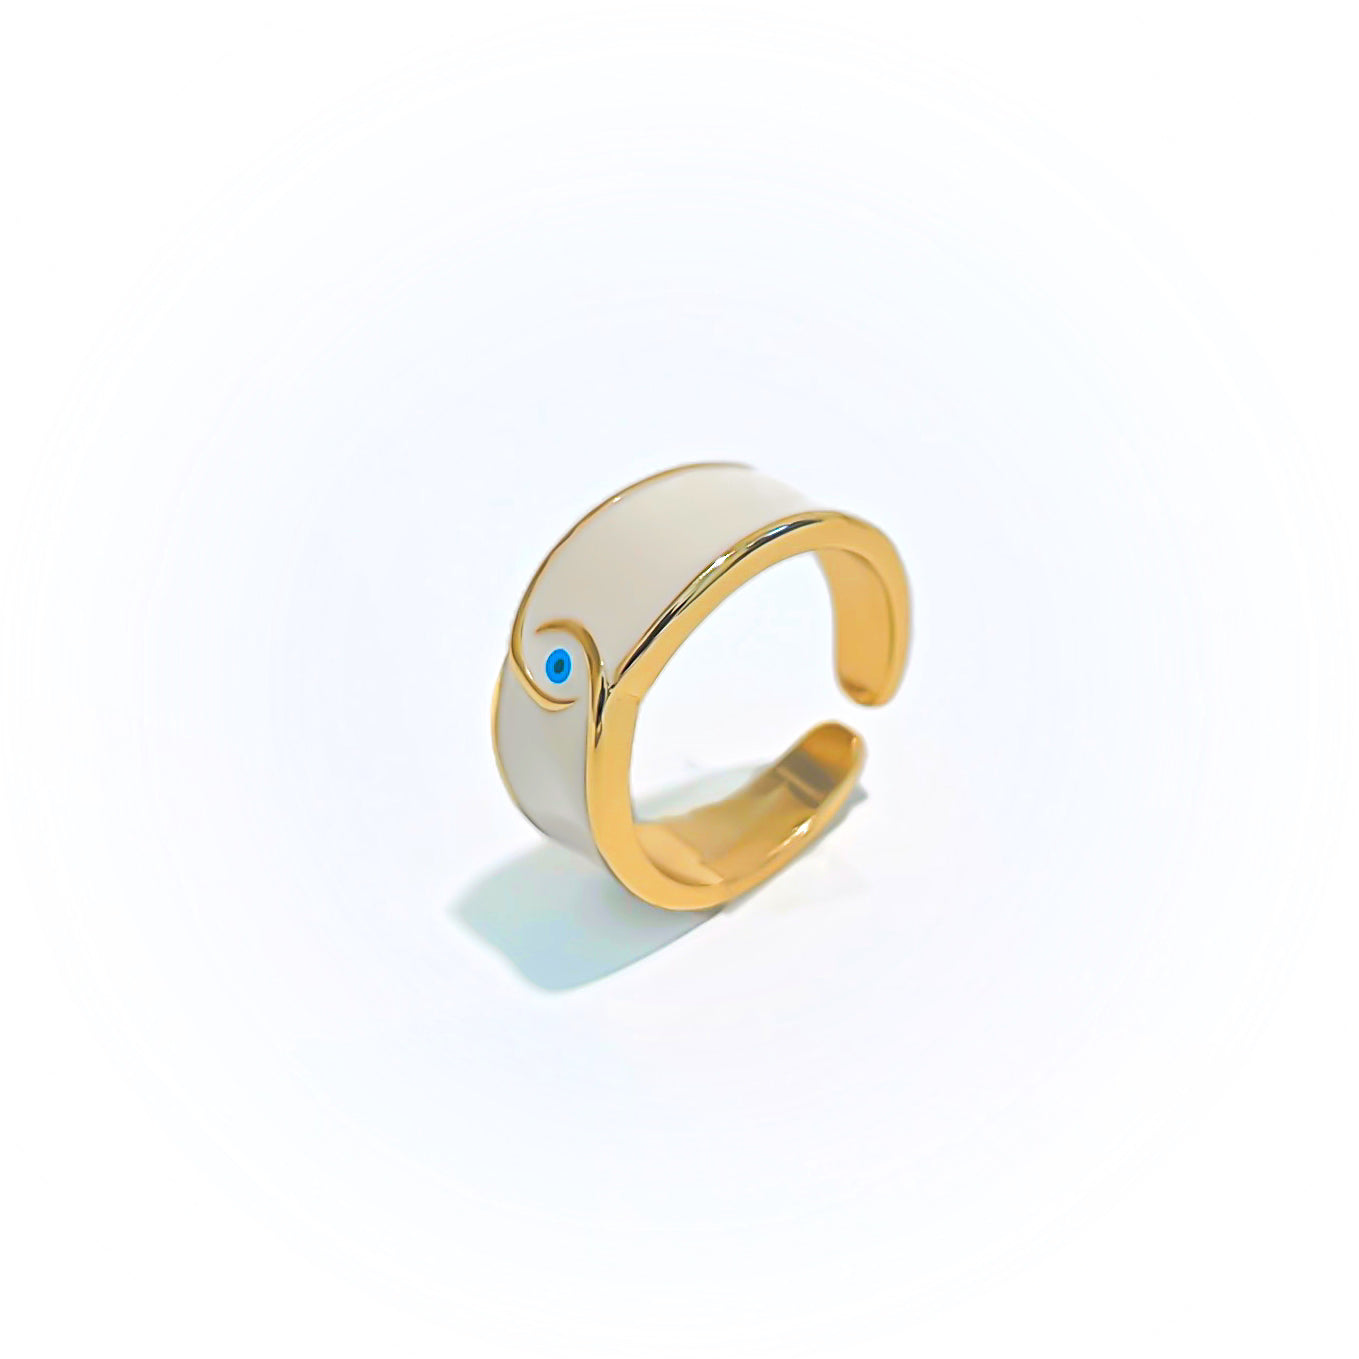    joya-anillo-con-significado-bano-de-oro-turco